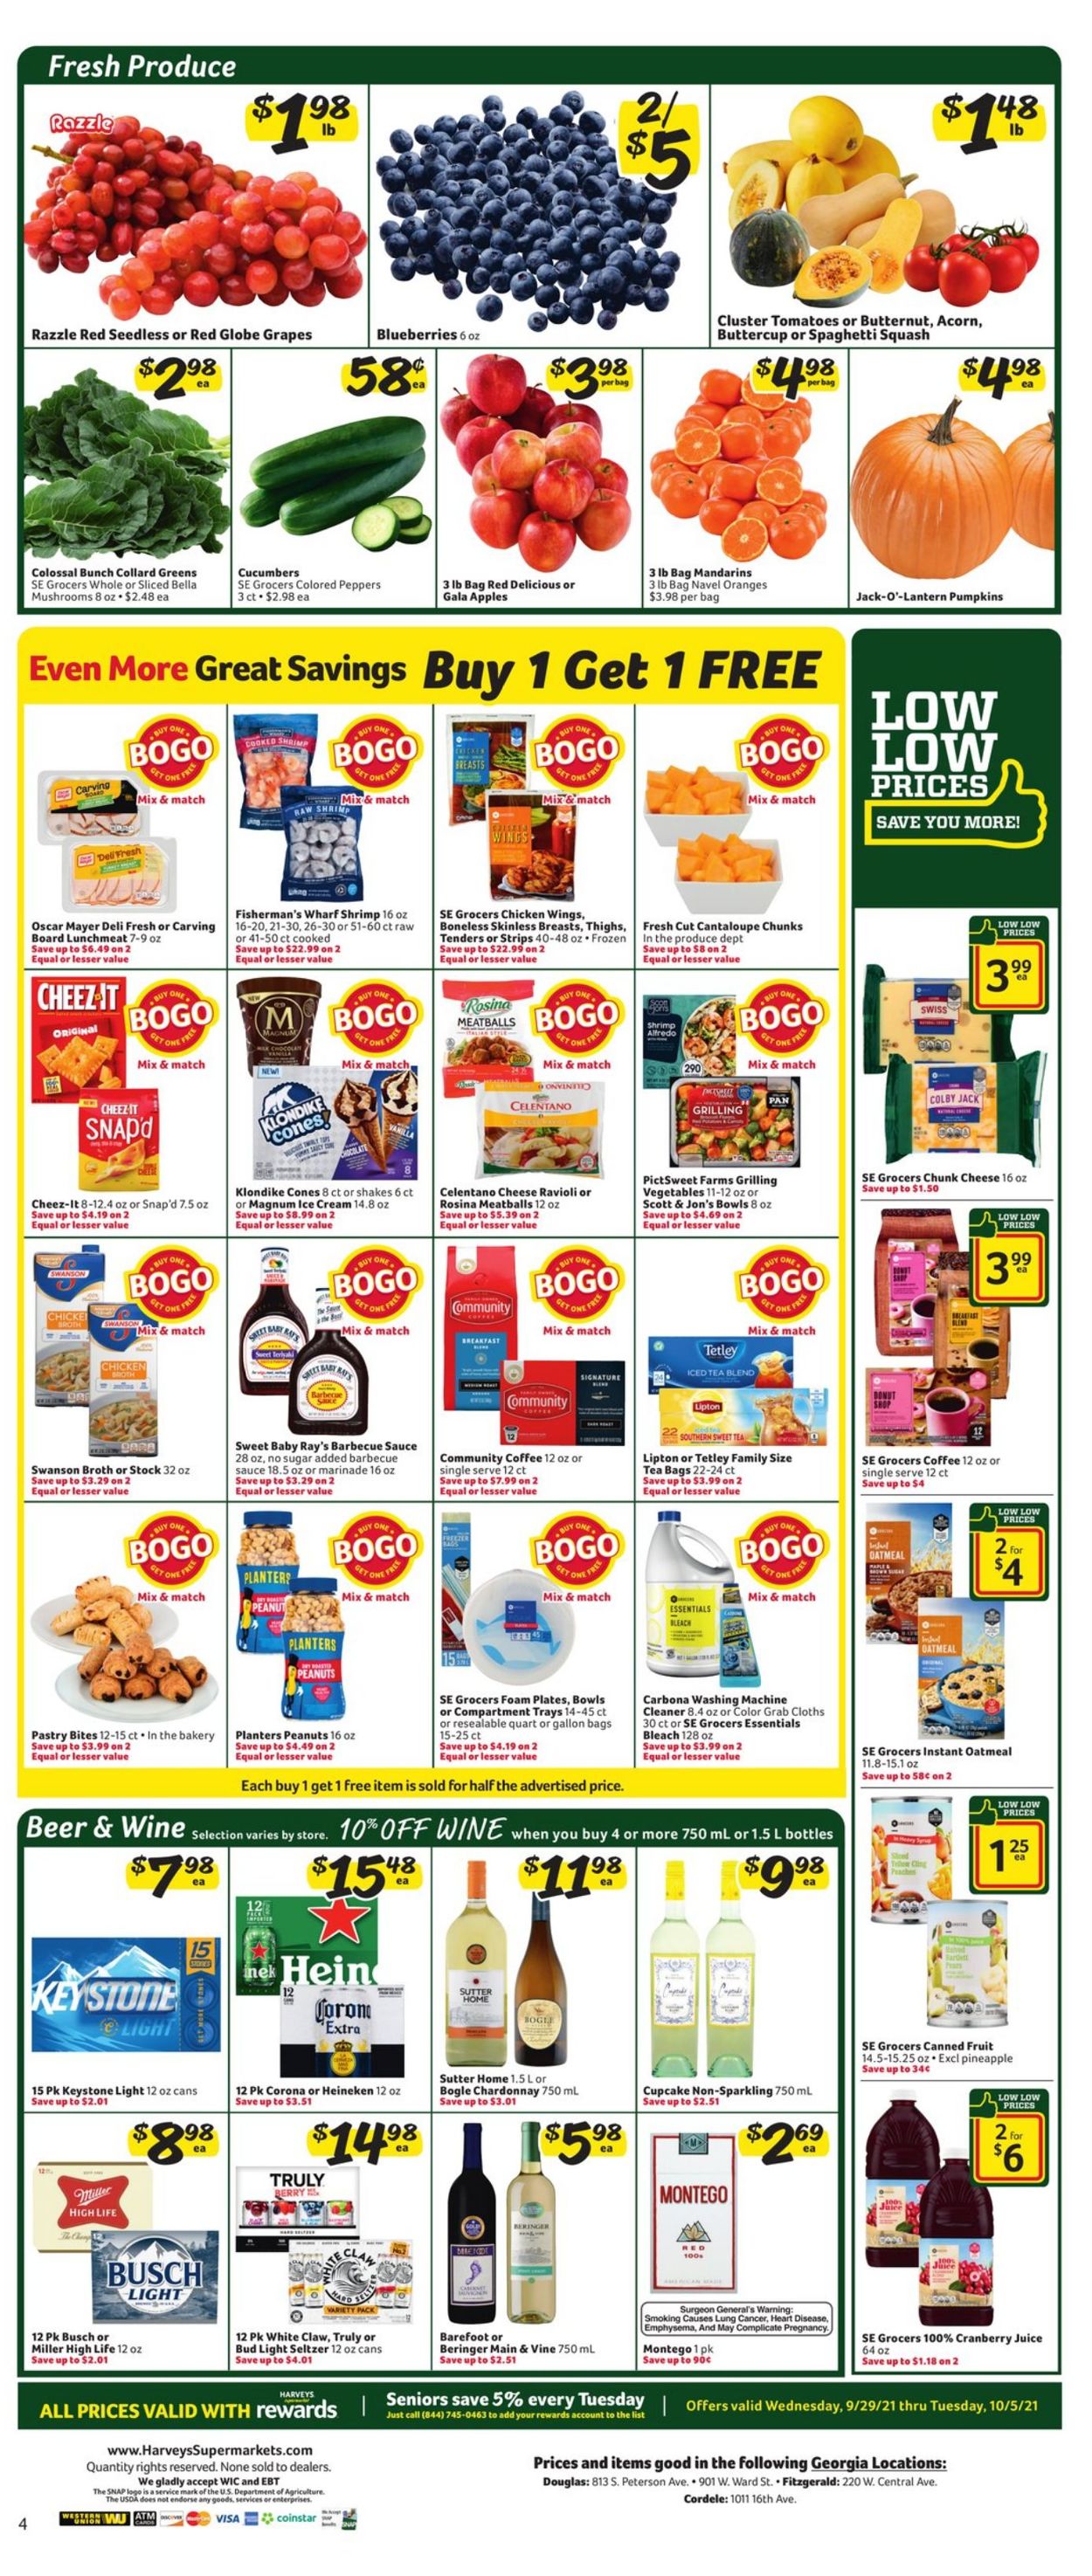 Catalogue Harveys Supermarket from 09/29/2021